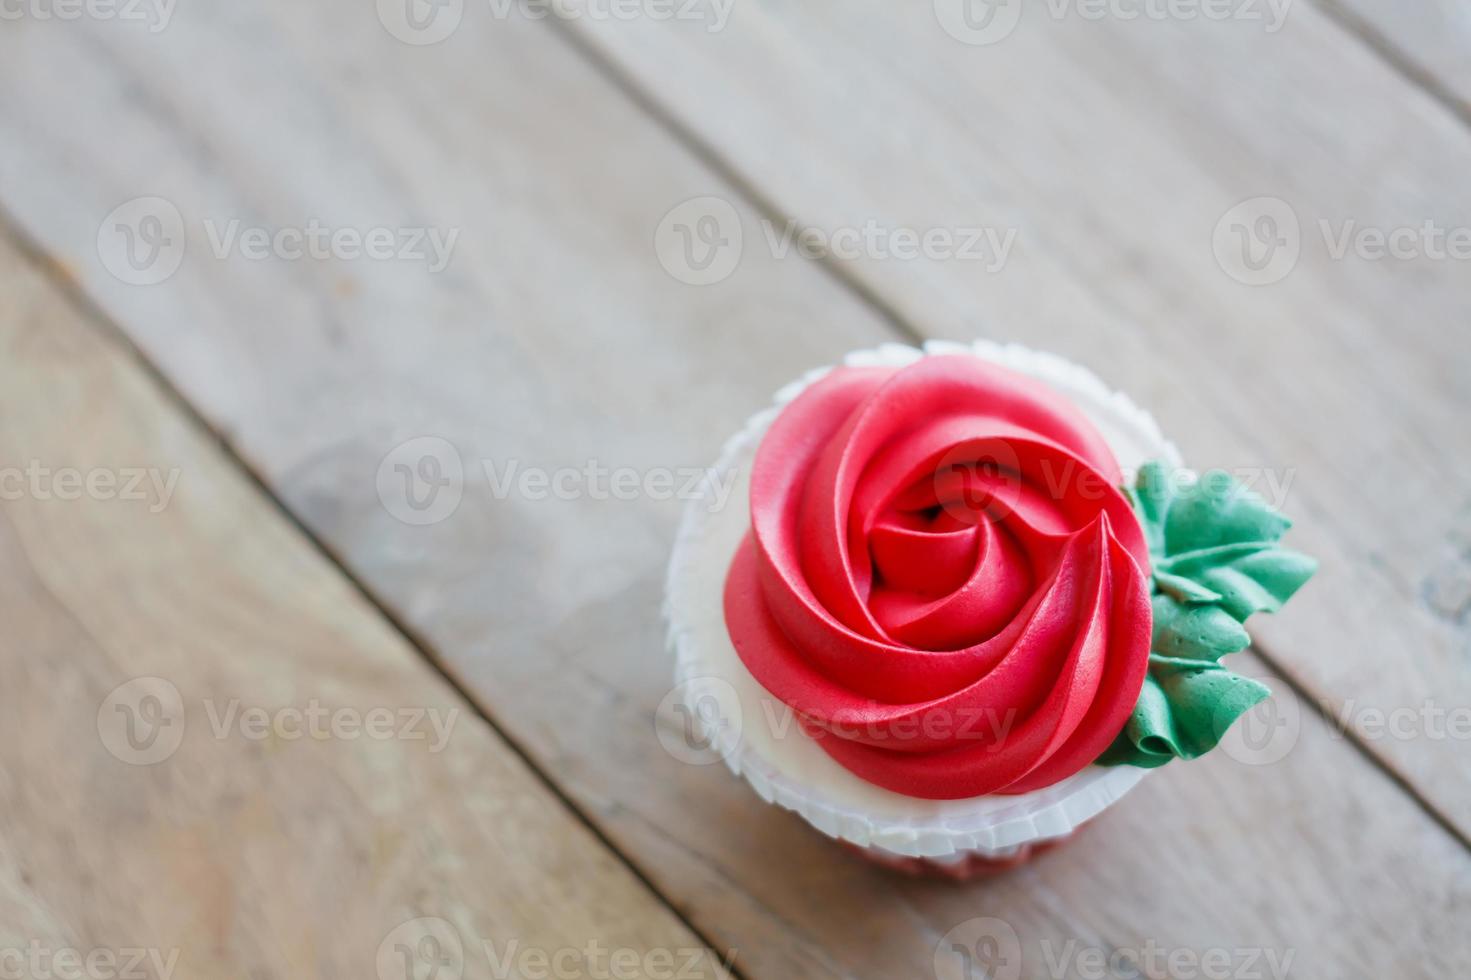 cupcake rose rouge sur table en bois photo